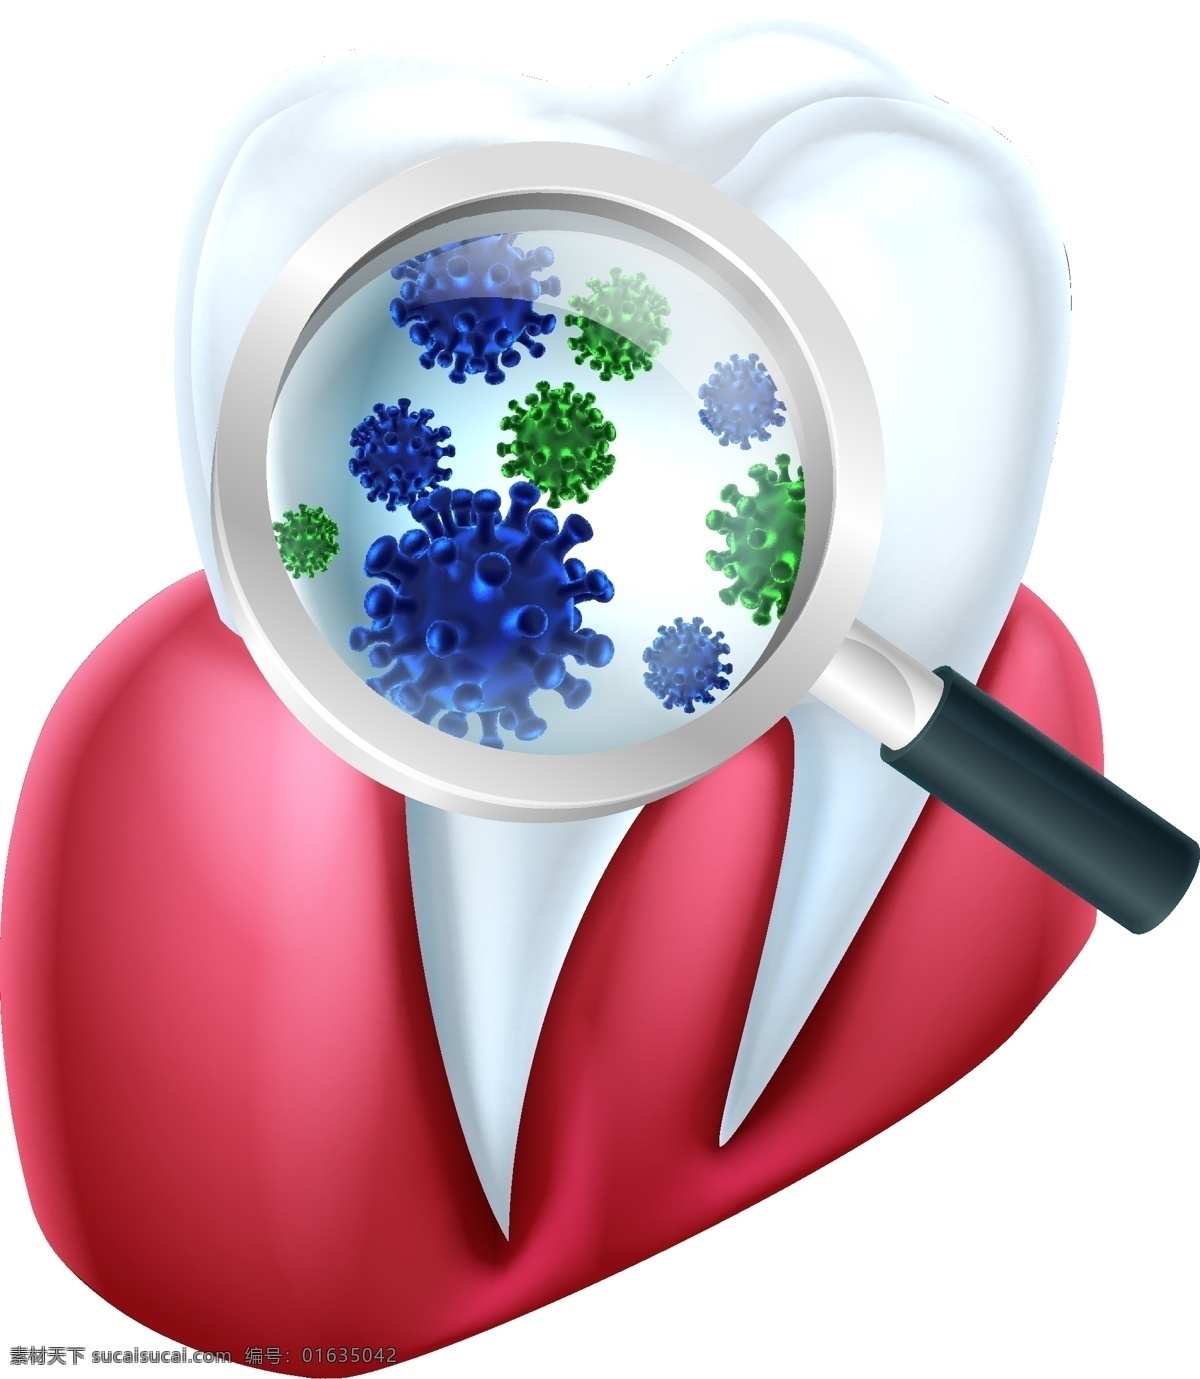 牙龈 牙齿 上 细菌 矢量 洁白的牙齿 牙齿模型 放大镜 立体牙齿 牙龈模型 现代科技 医疗护理